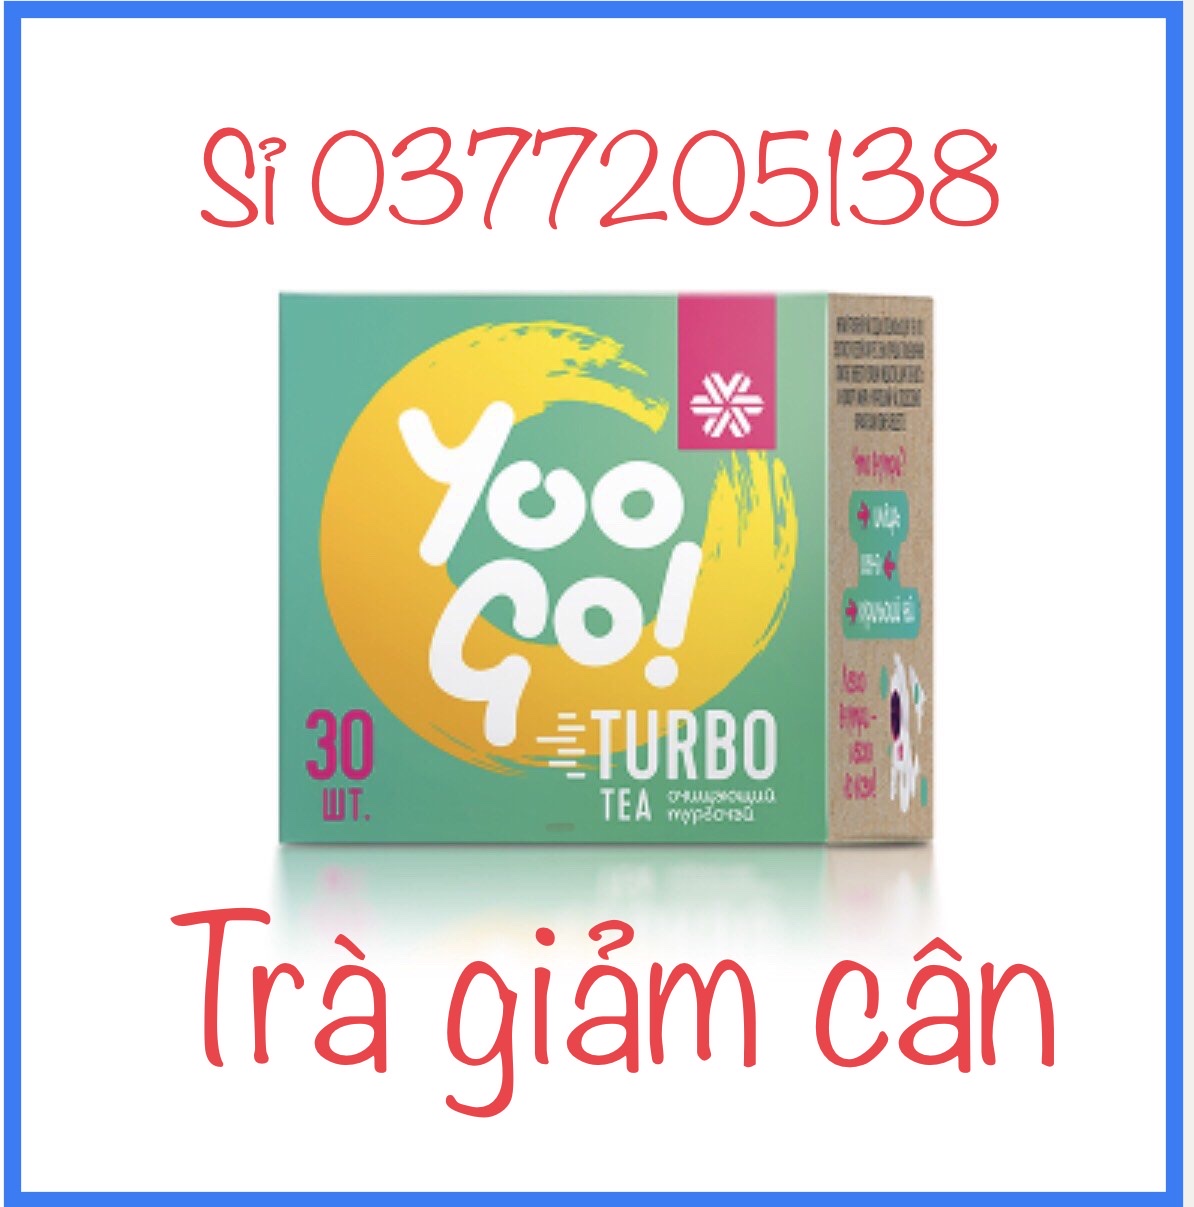 Trà thảo mộc Turbo tea -YOO GO